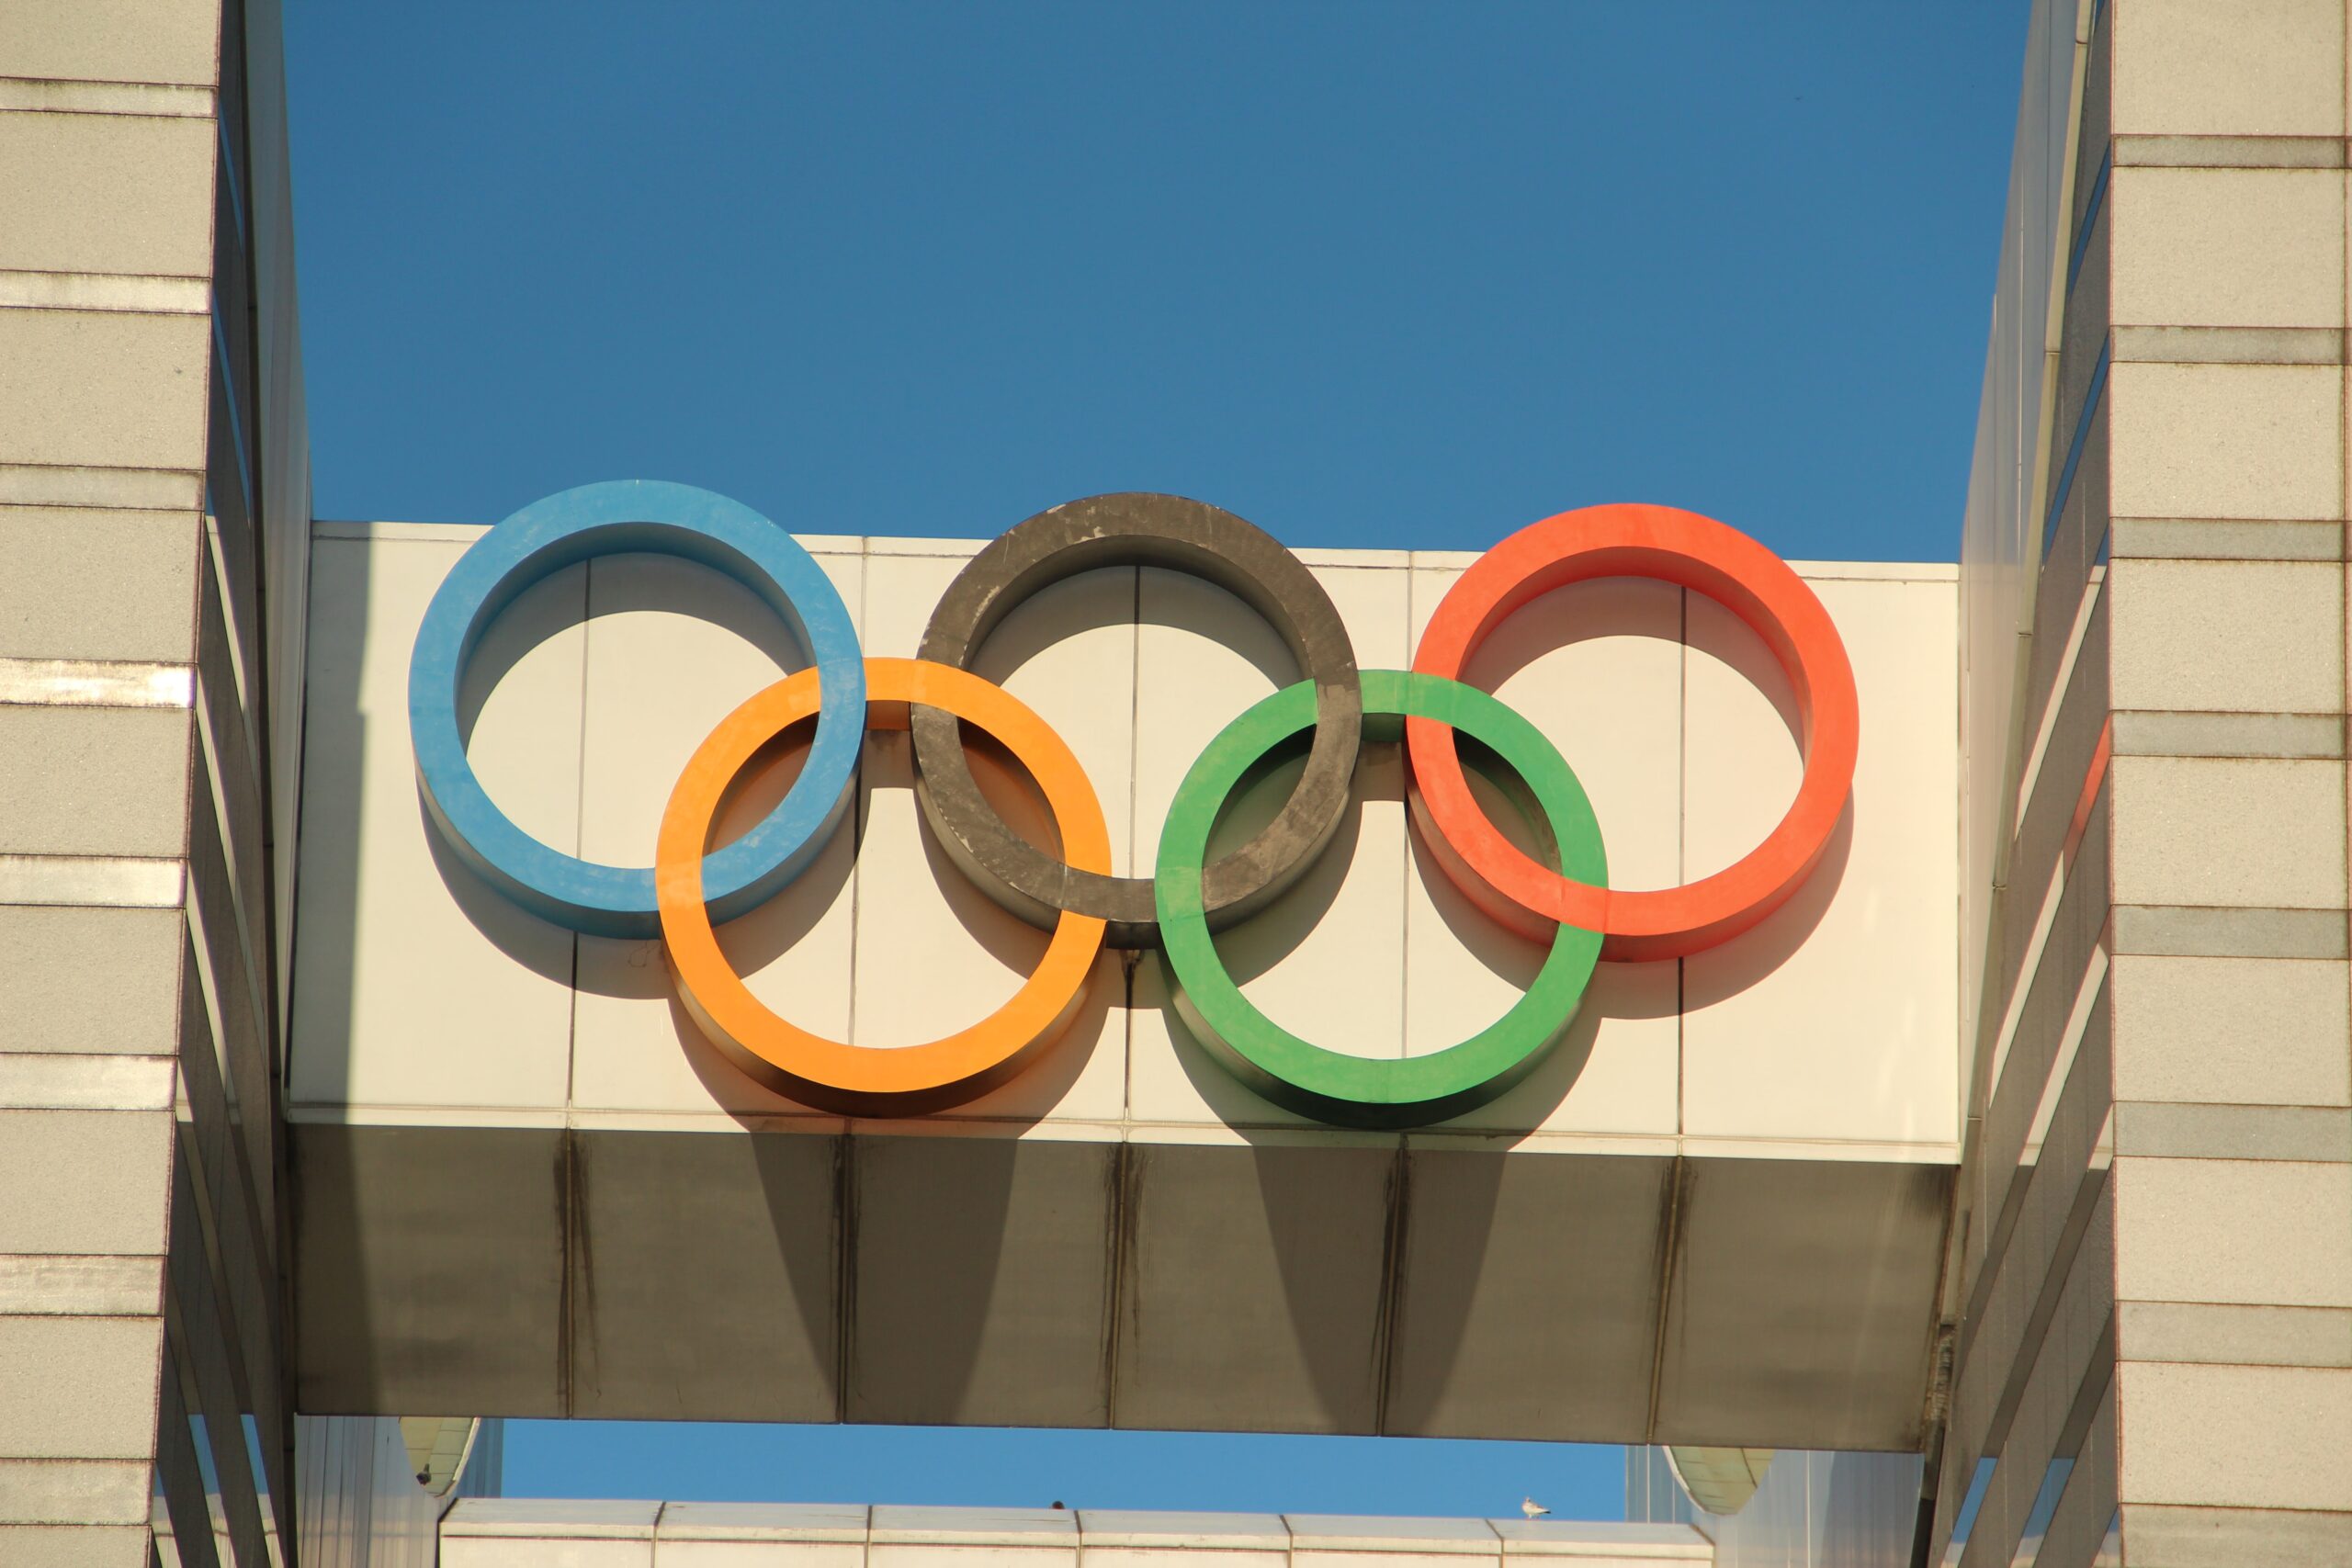 Você já sabe onde serão as próximas Olimpíadas? Fique por dentro da sede dos Jogos Olímpicos de 2024, 2028 e 2032.